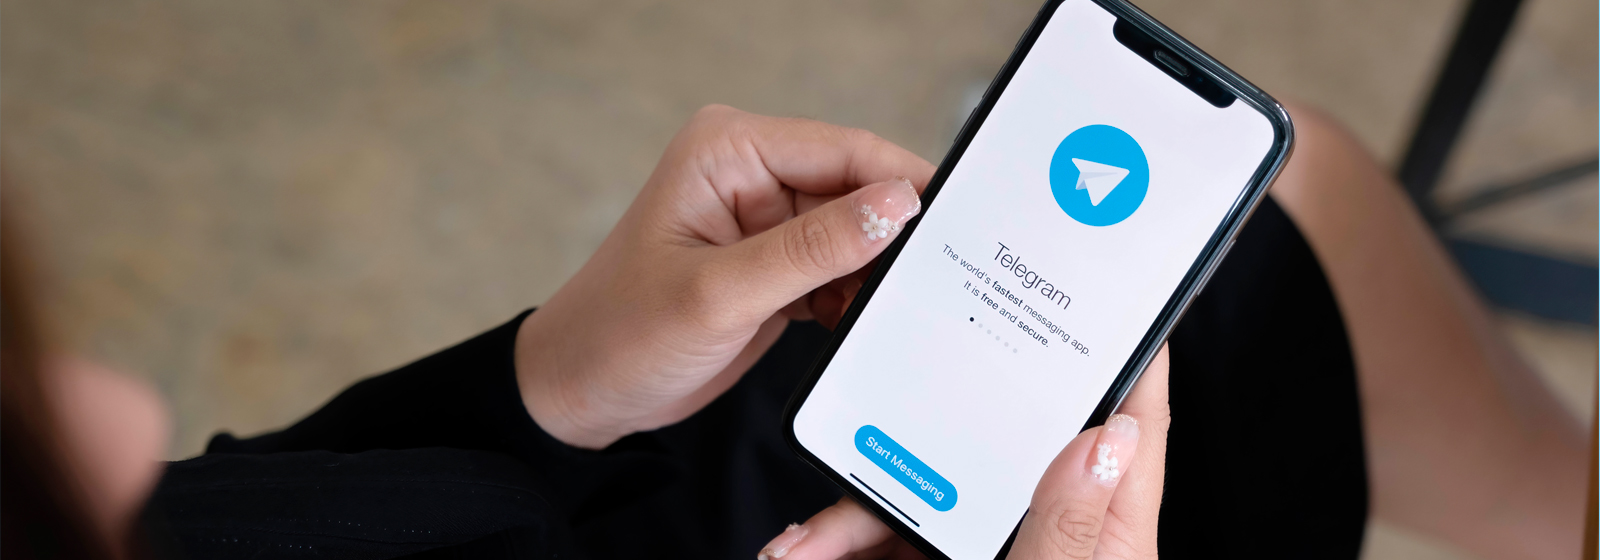 Chat secreto e envio de arquivos levaram procuradores a adotar Telegram -  16/06/2019 - UOL Notícias